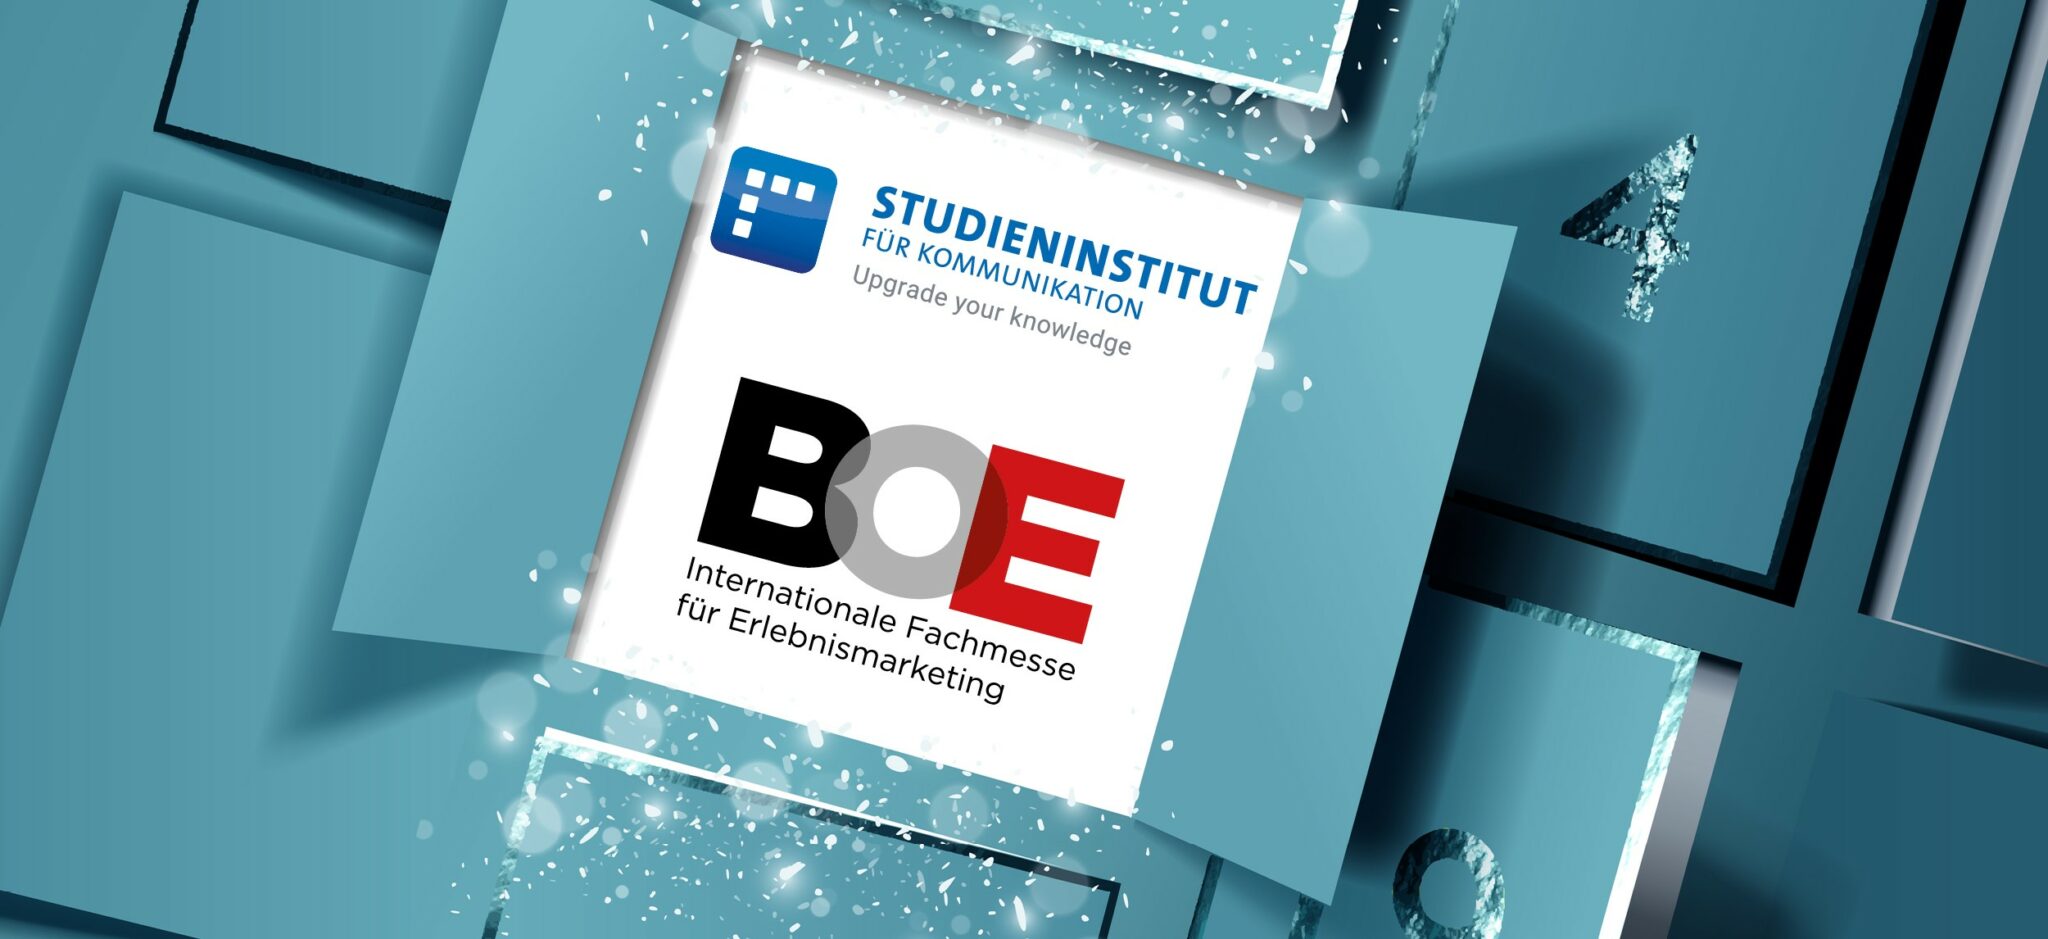 BOE-Studieninstitut-Advent